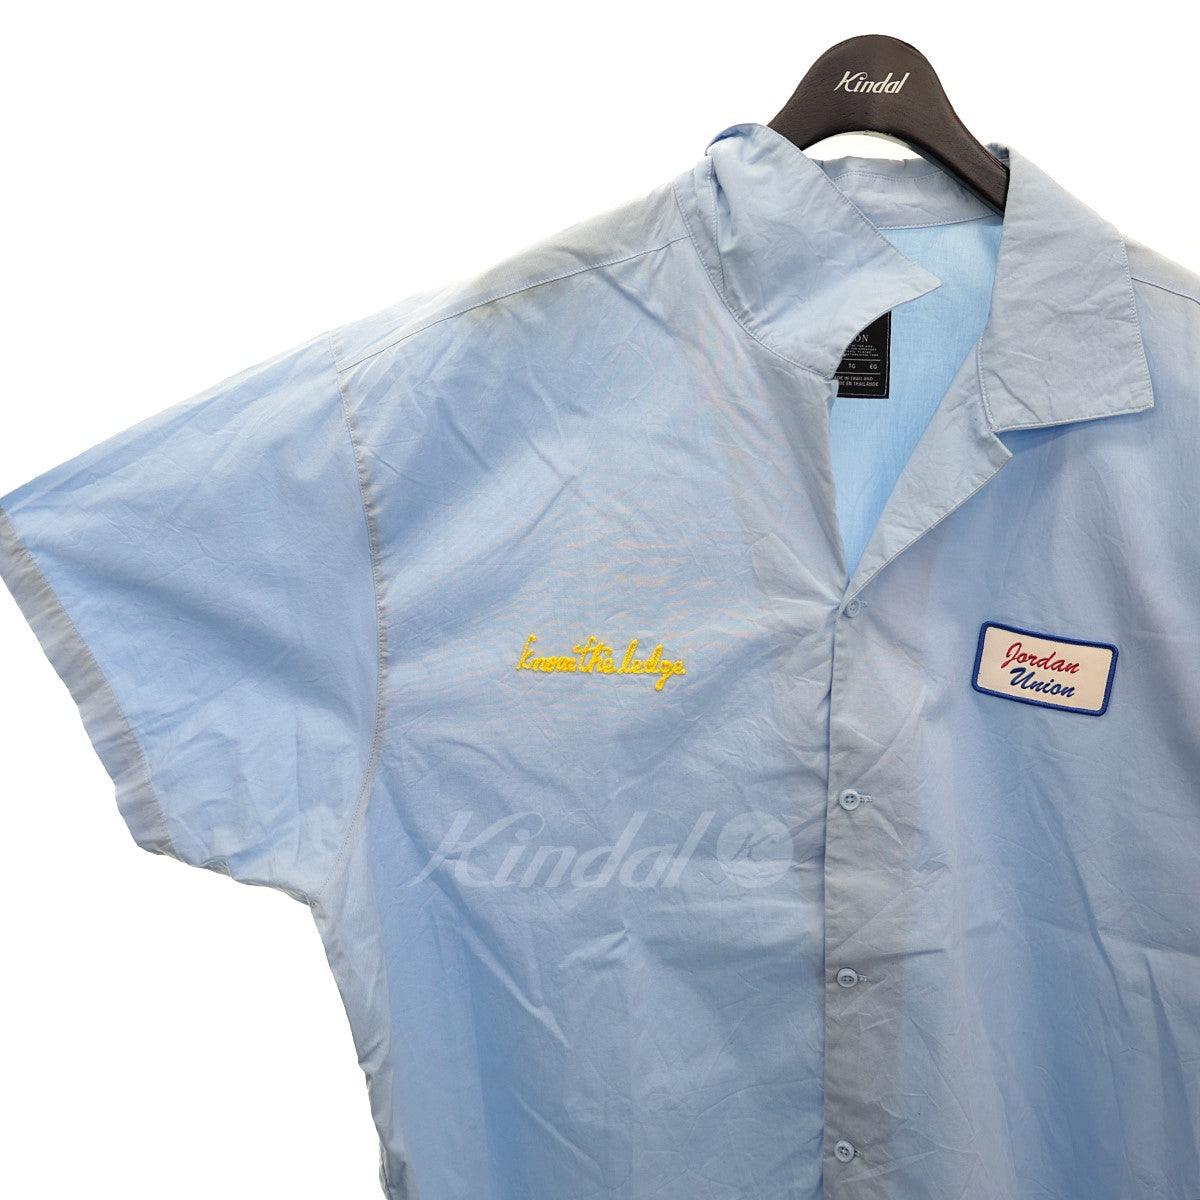 大特価得価新品 union jordan shirt メカニック L サイズ シャツ